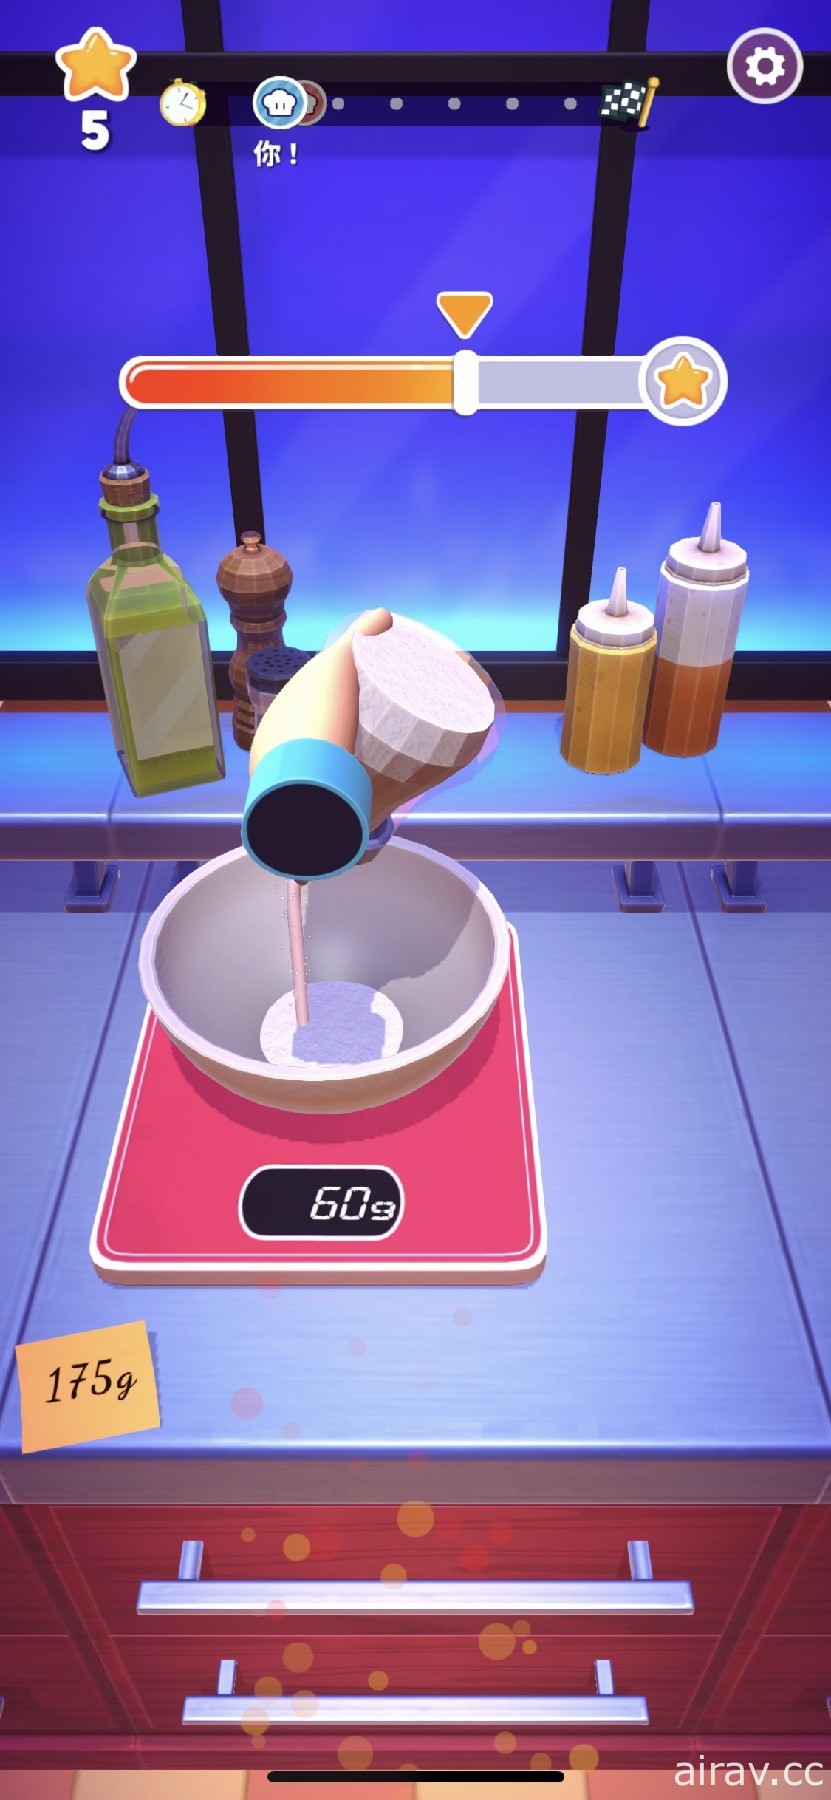 趣味烹饪竞赛游戏《MasterChef: Let’s Cook》于 Apple Arcade 推出 展现厨艺的时刻到了